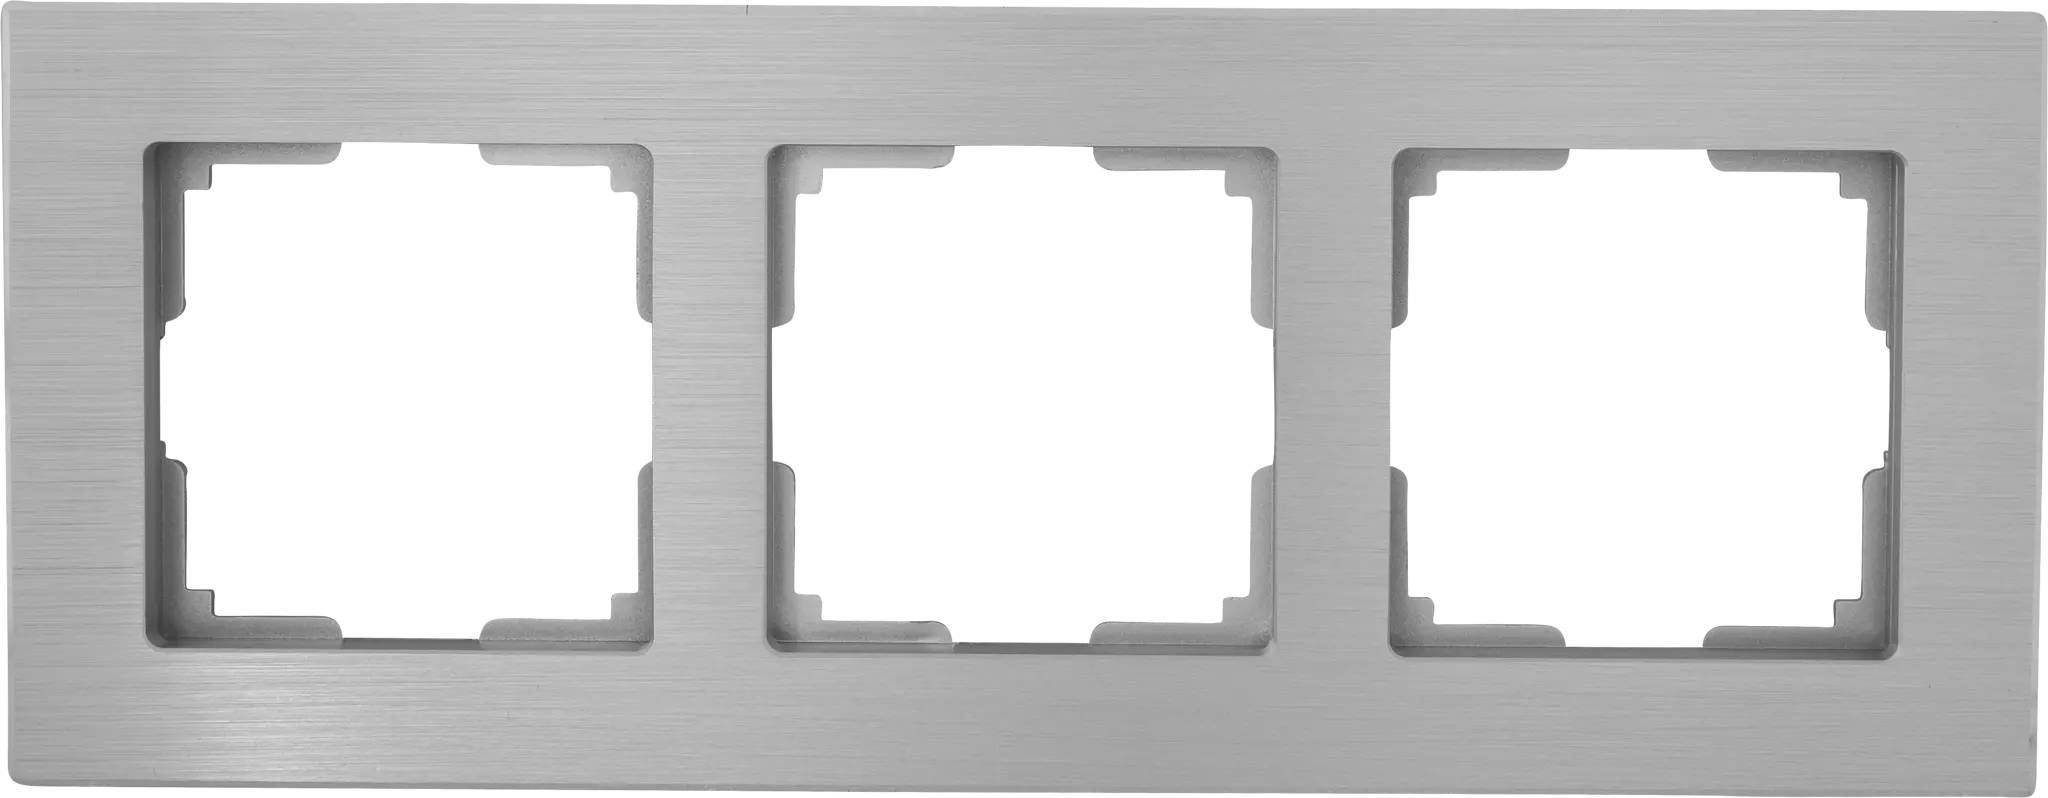 Рамка для розеток и выключателей Werkel Aluminium 3 поста, металл, цвет алюминий рамка на 4 поста werkel aluminium w0041711 4690389158162